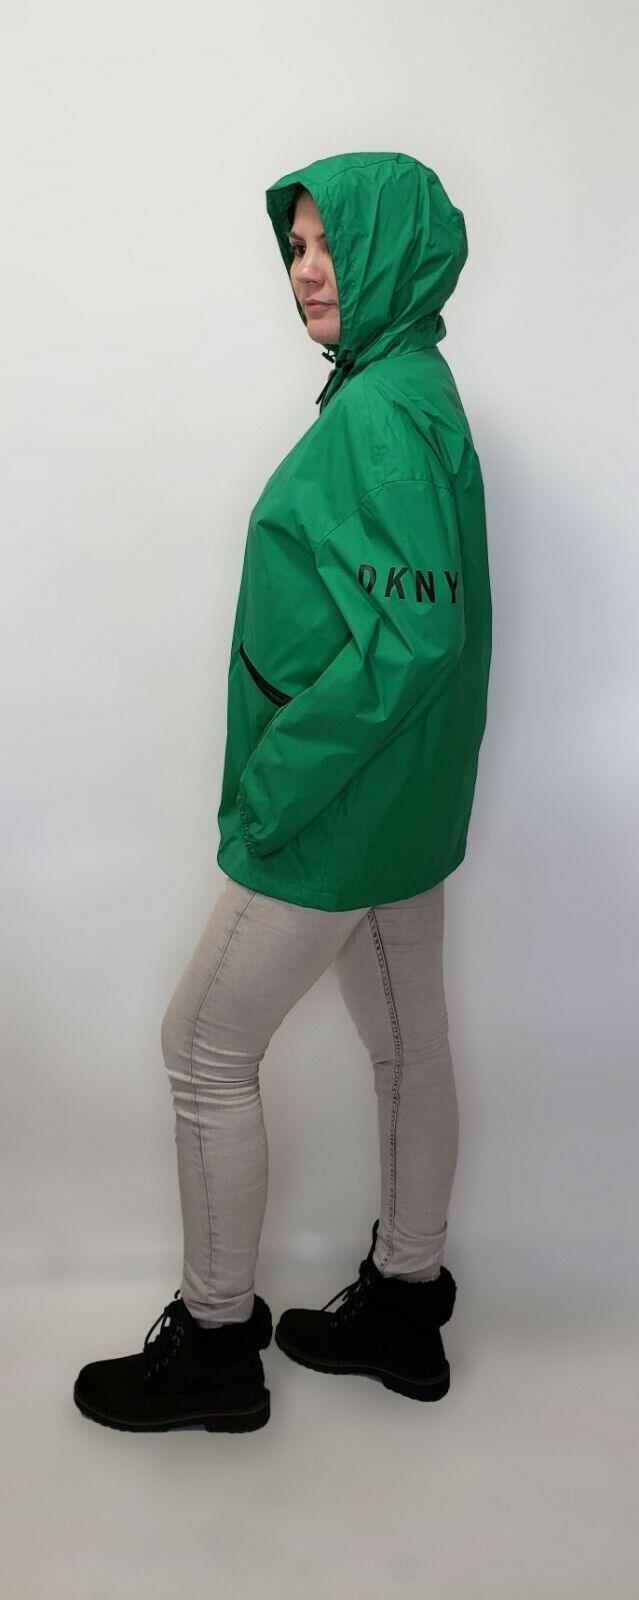 DKNY Womens Green Raincoat Jacket Hooded Logo Windbreaker Size M - SVNYFancy